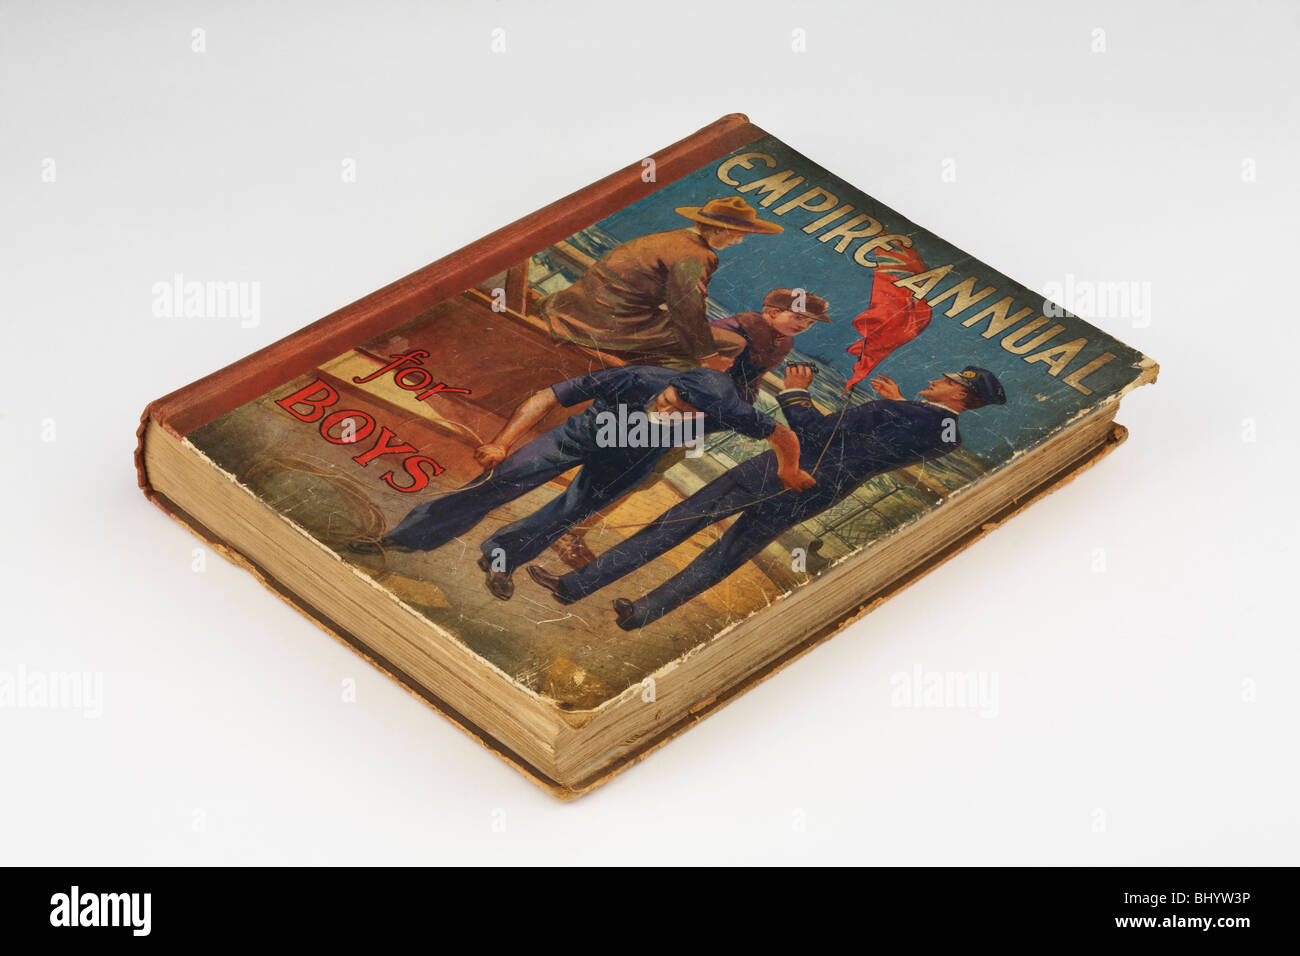 Ragazzi Impero libro annuale 1925 su sfondo bianco Foto Stock